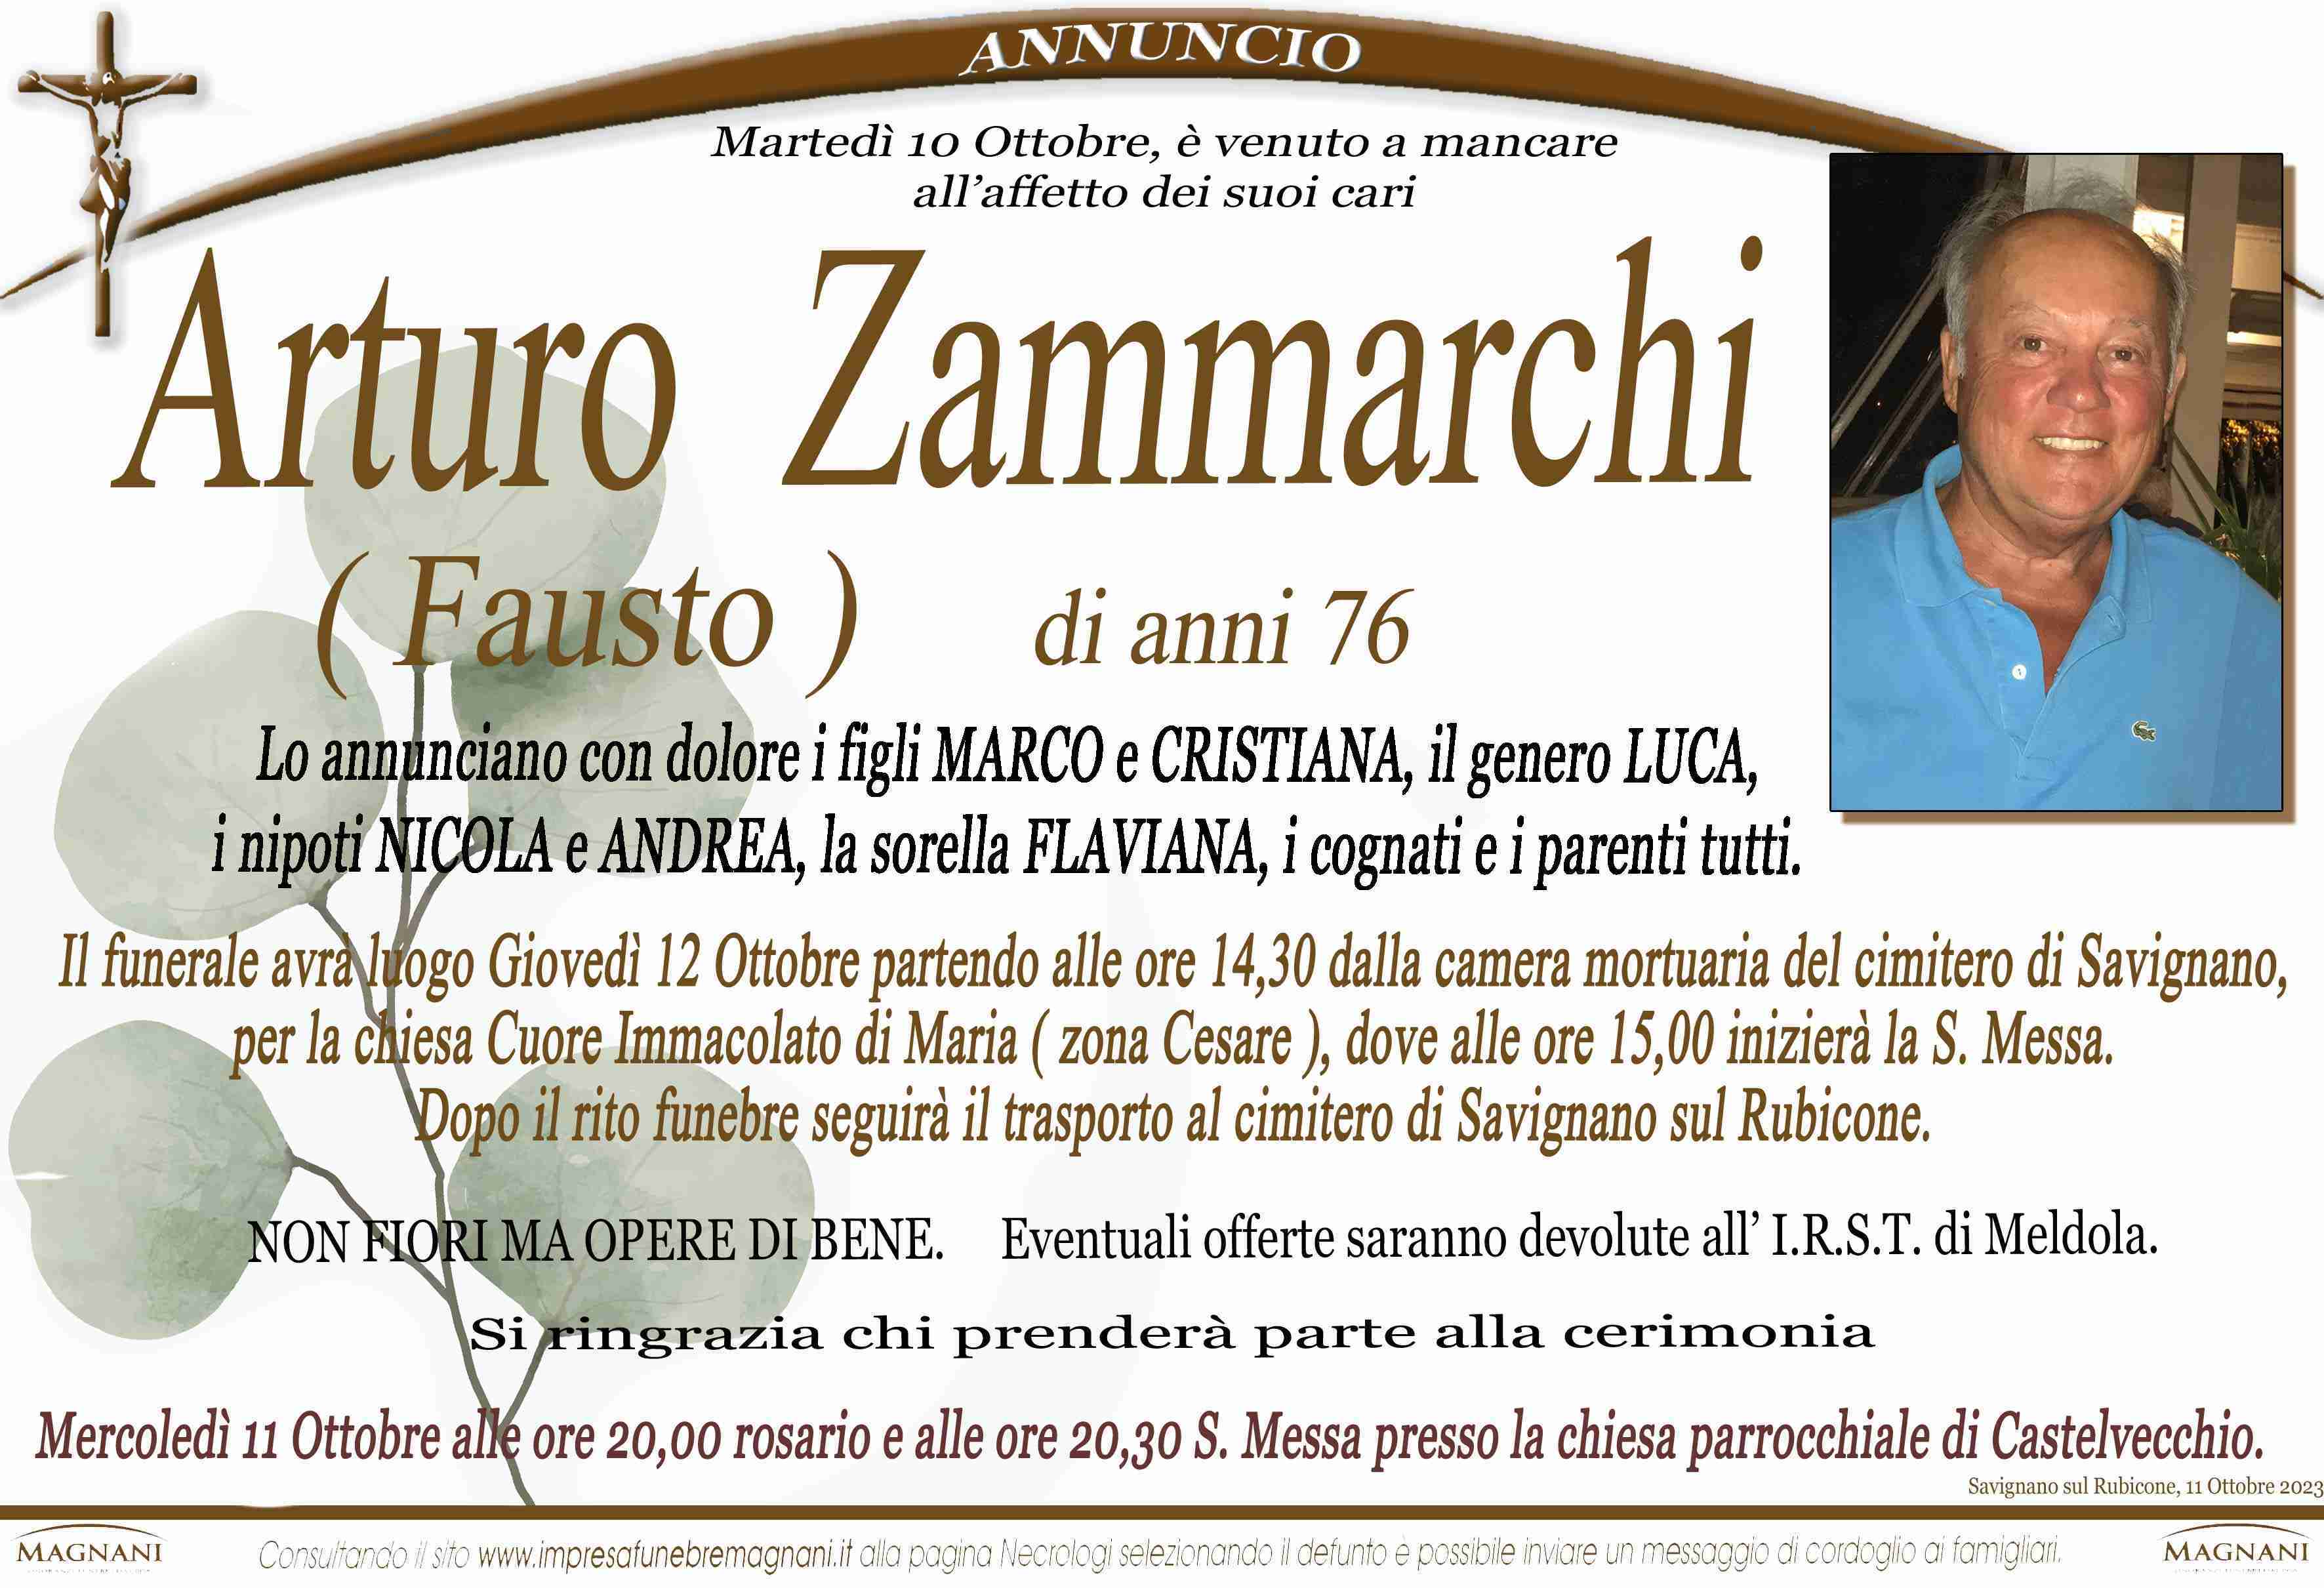 Arturo Zammarchi